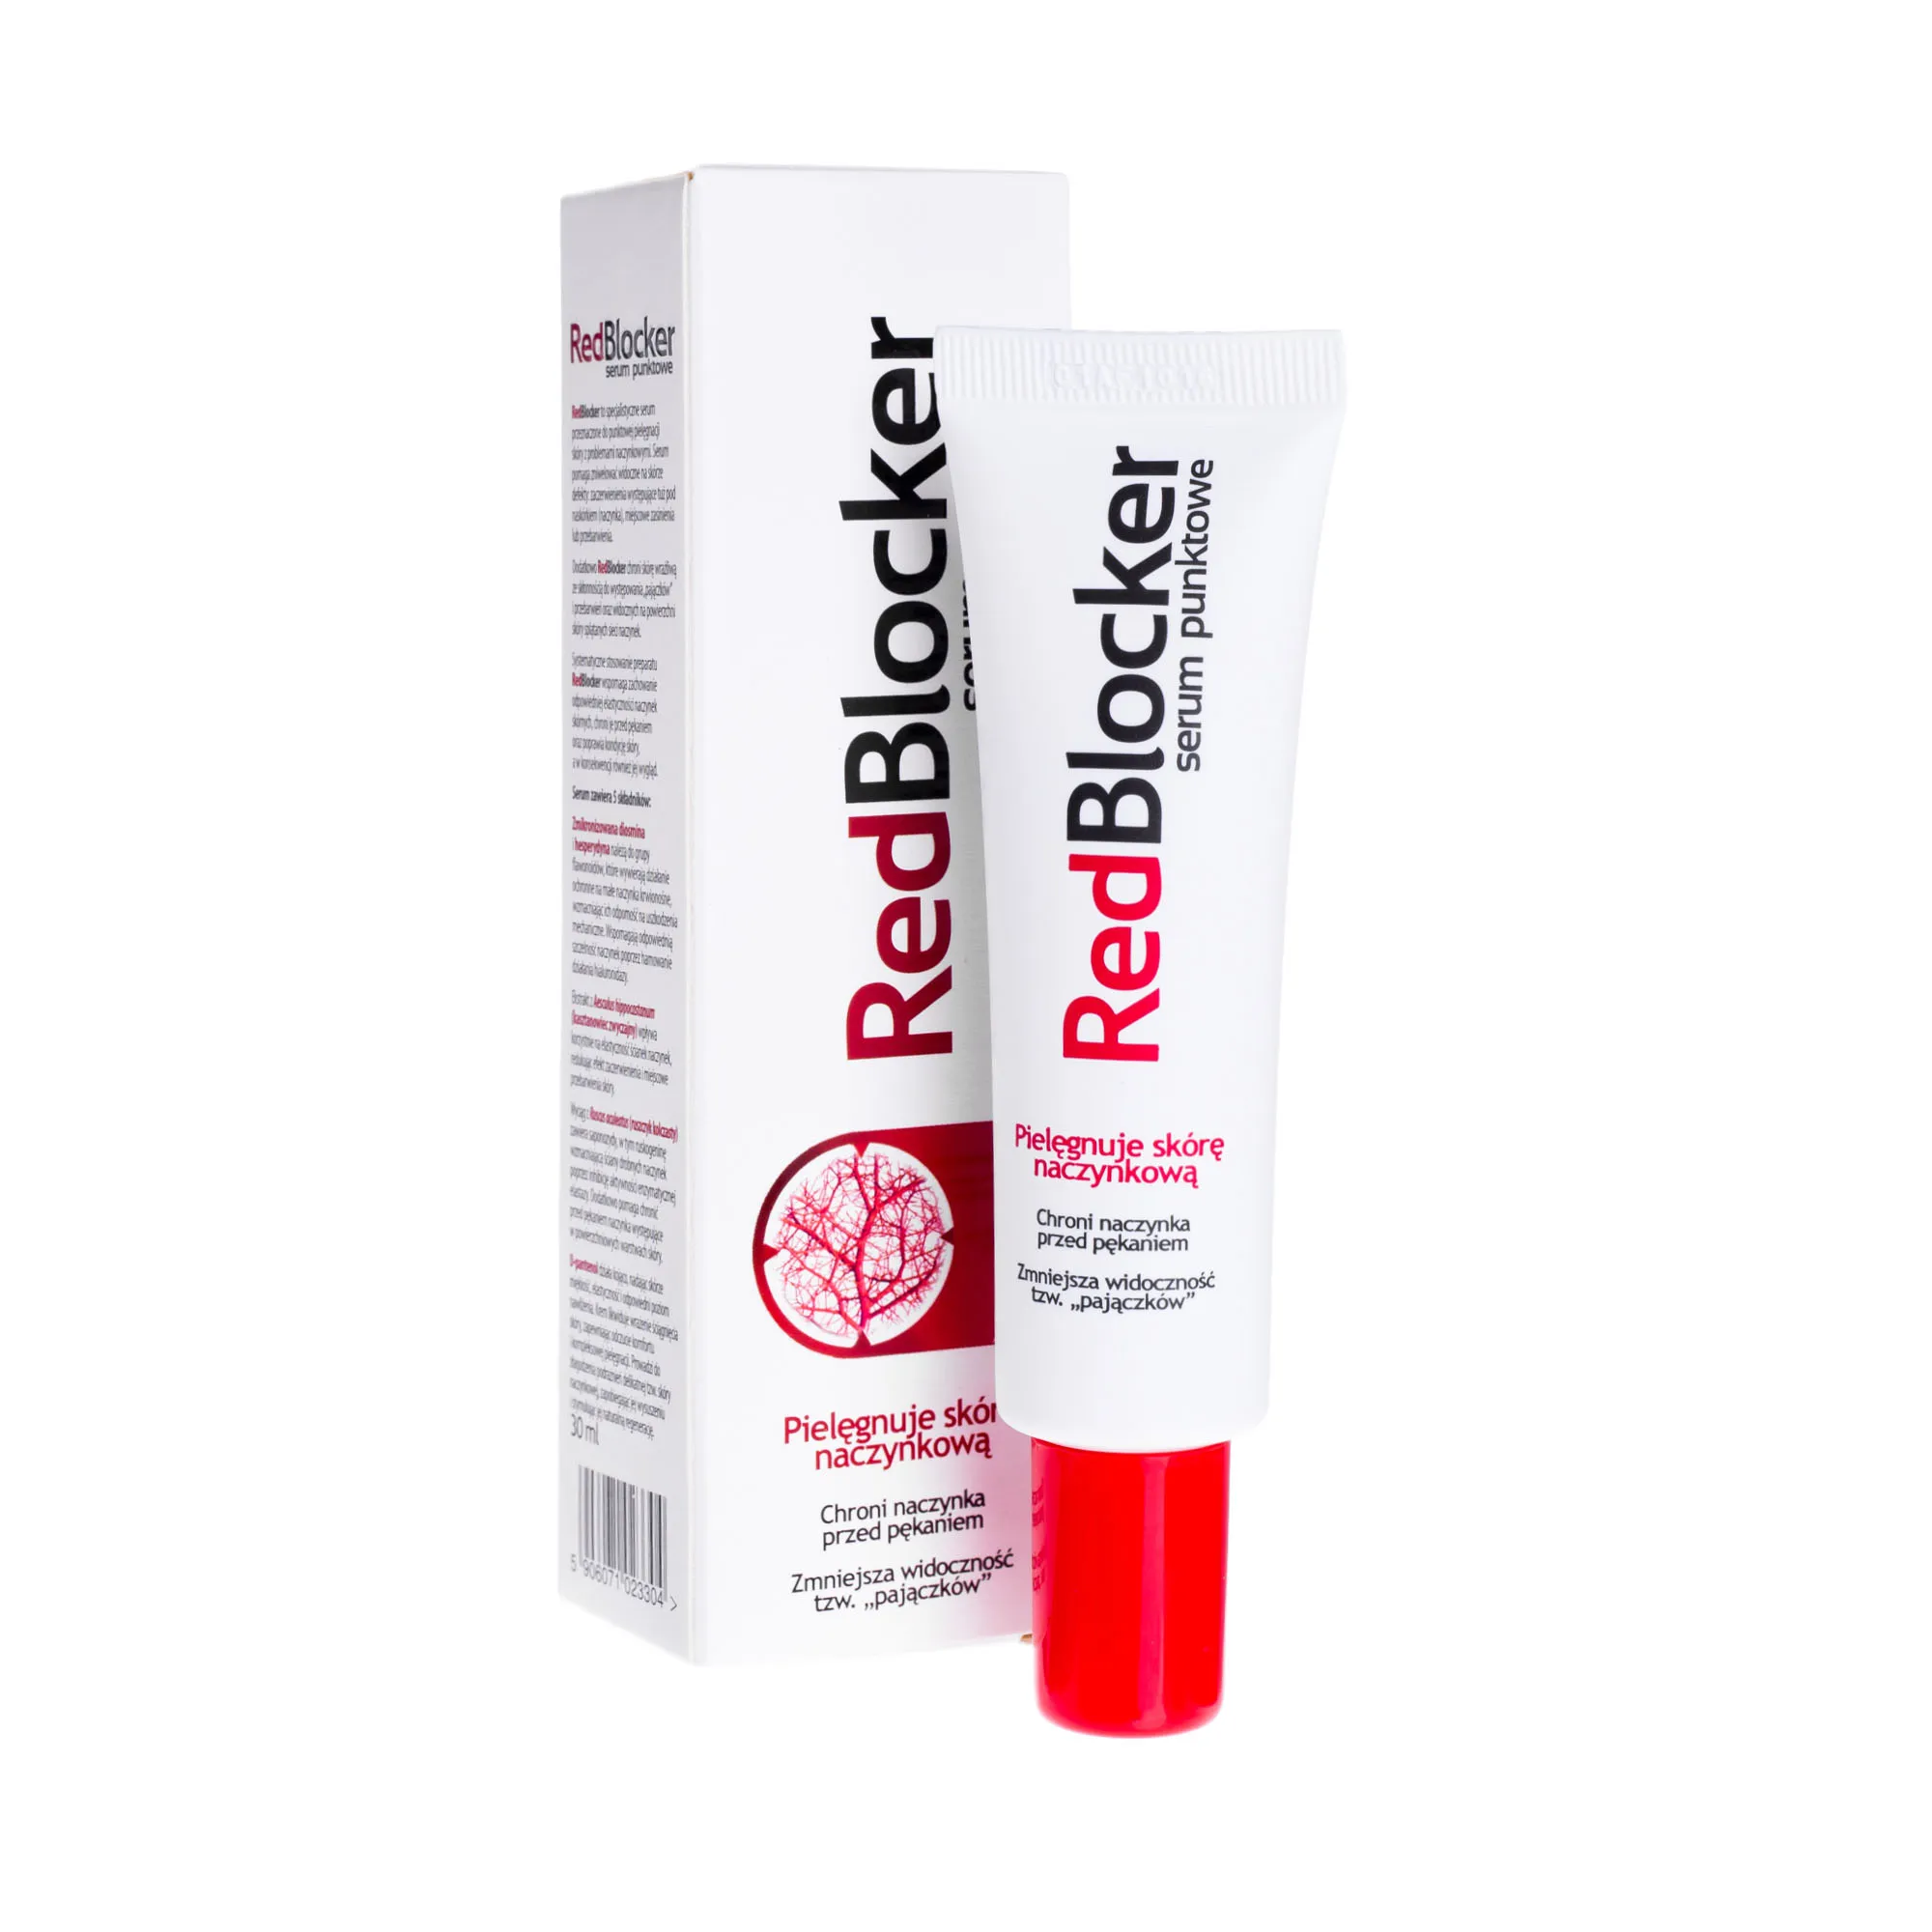 RedBlocker, serum punktowe do skóry naczynkowej, 30 ml 